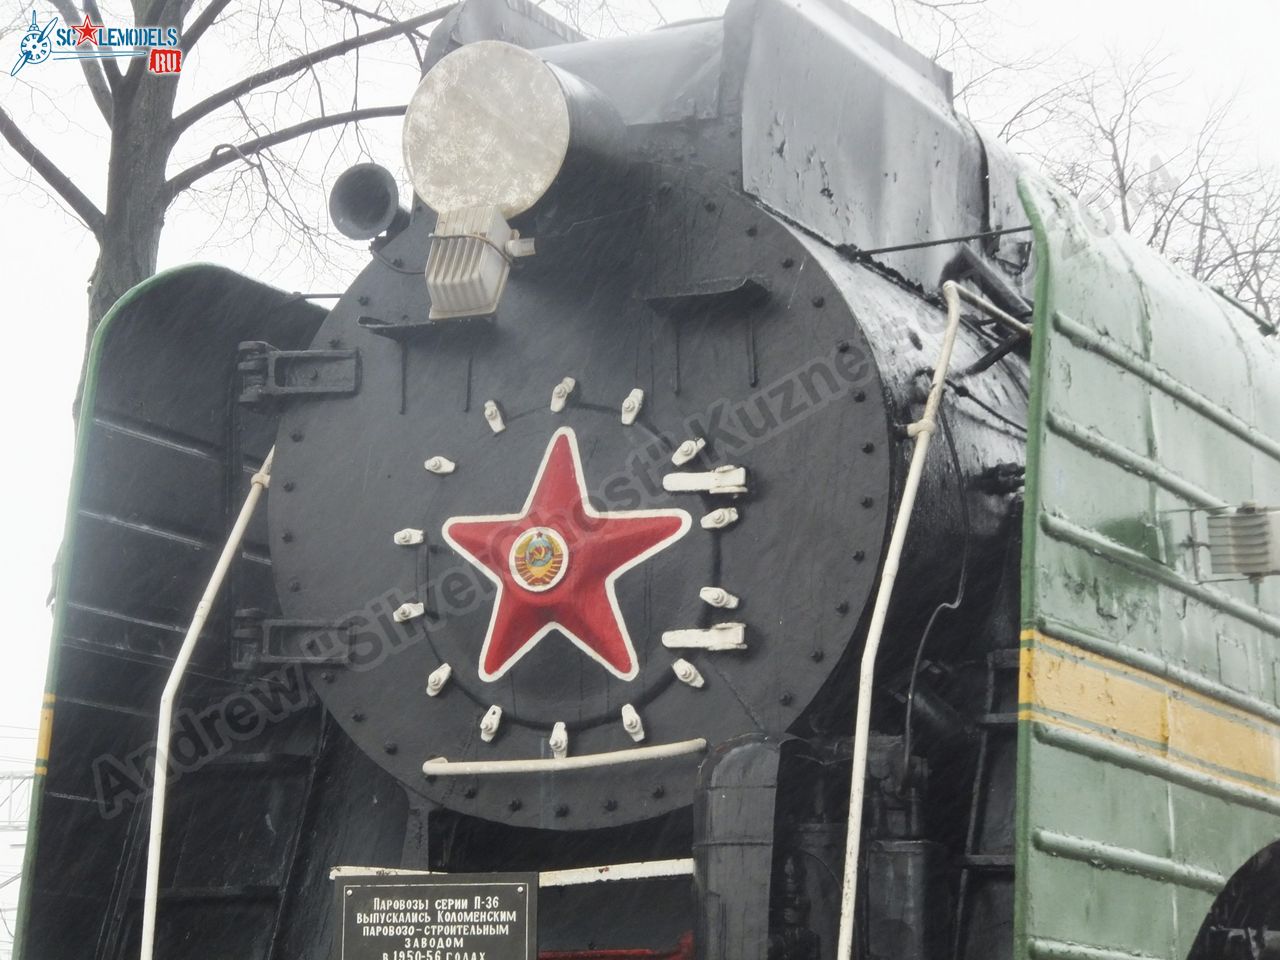 Train_P-36_Vyazma_0002.jpg